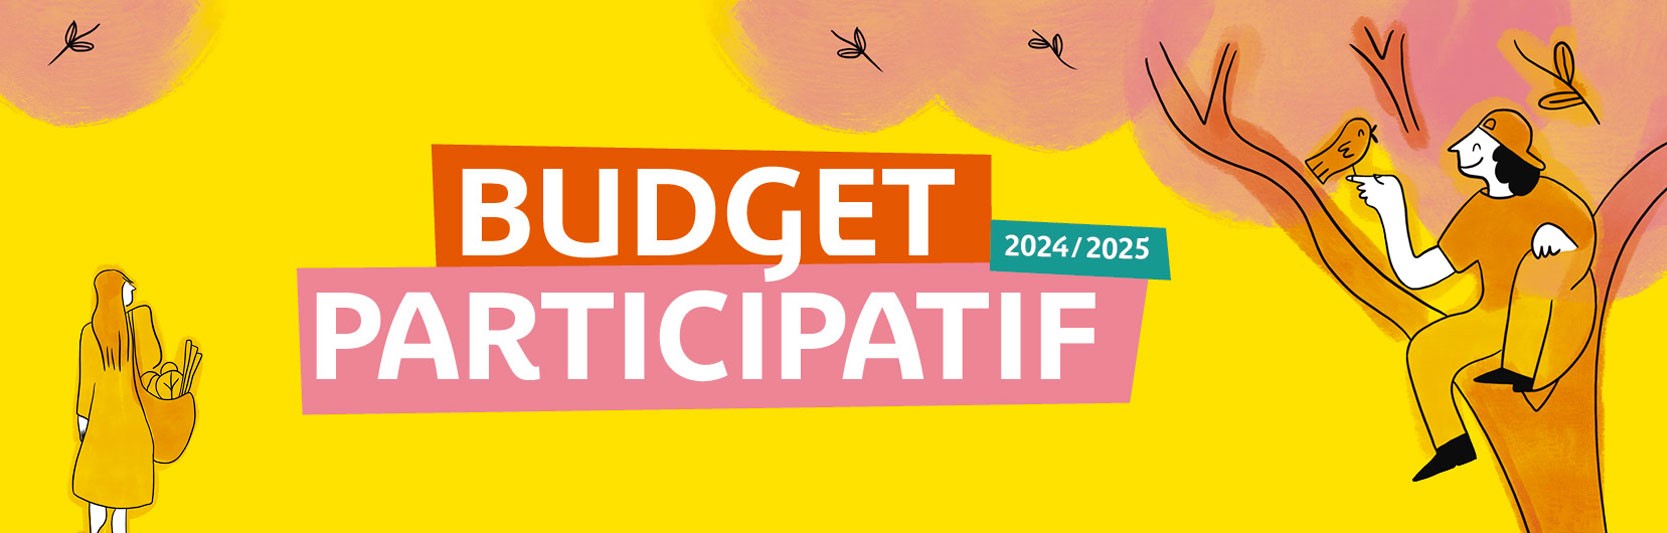 BUDGET PARTICIPATIF 2024 / 2025